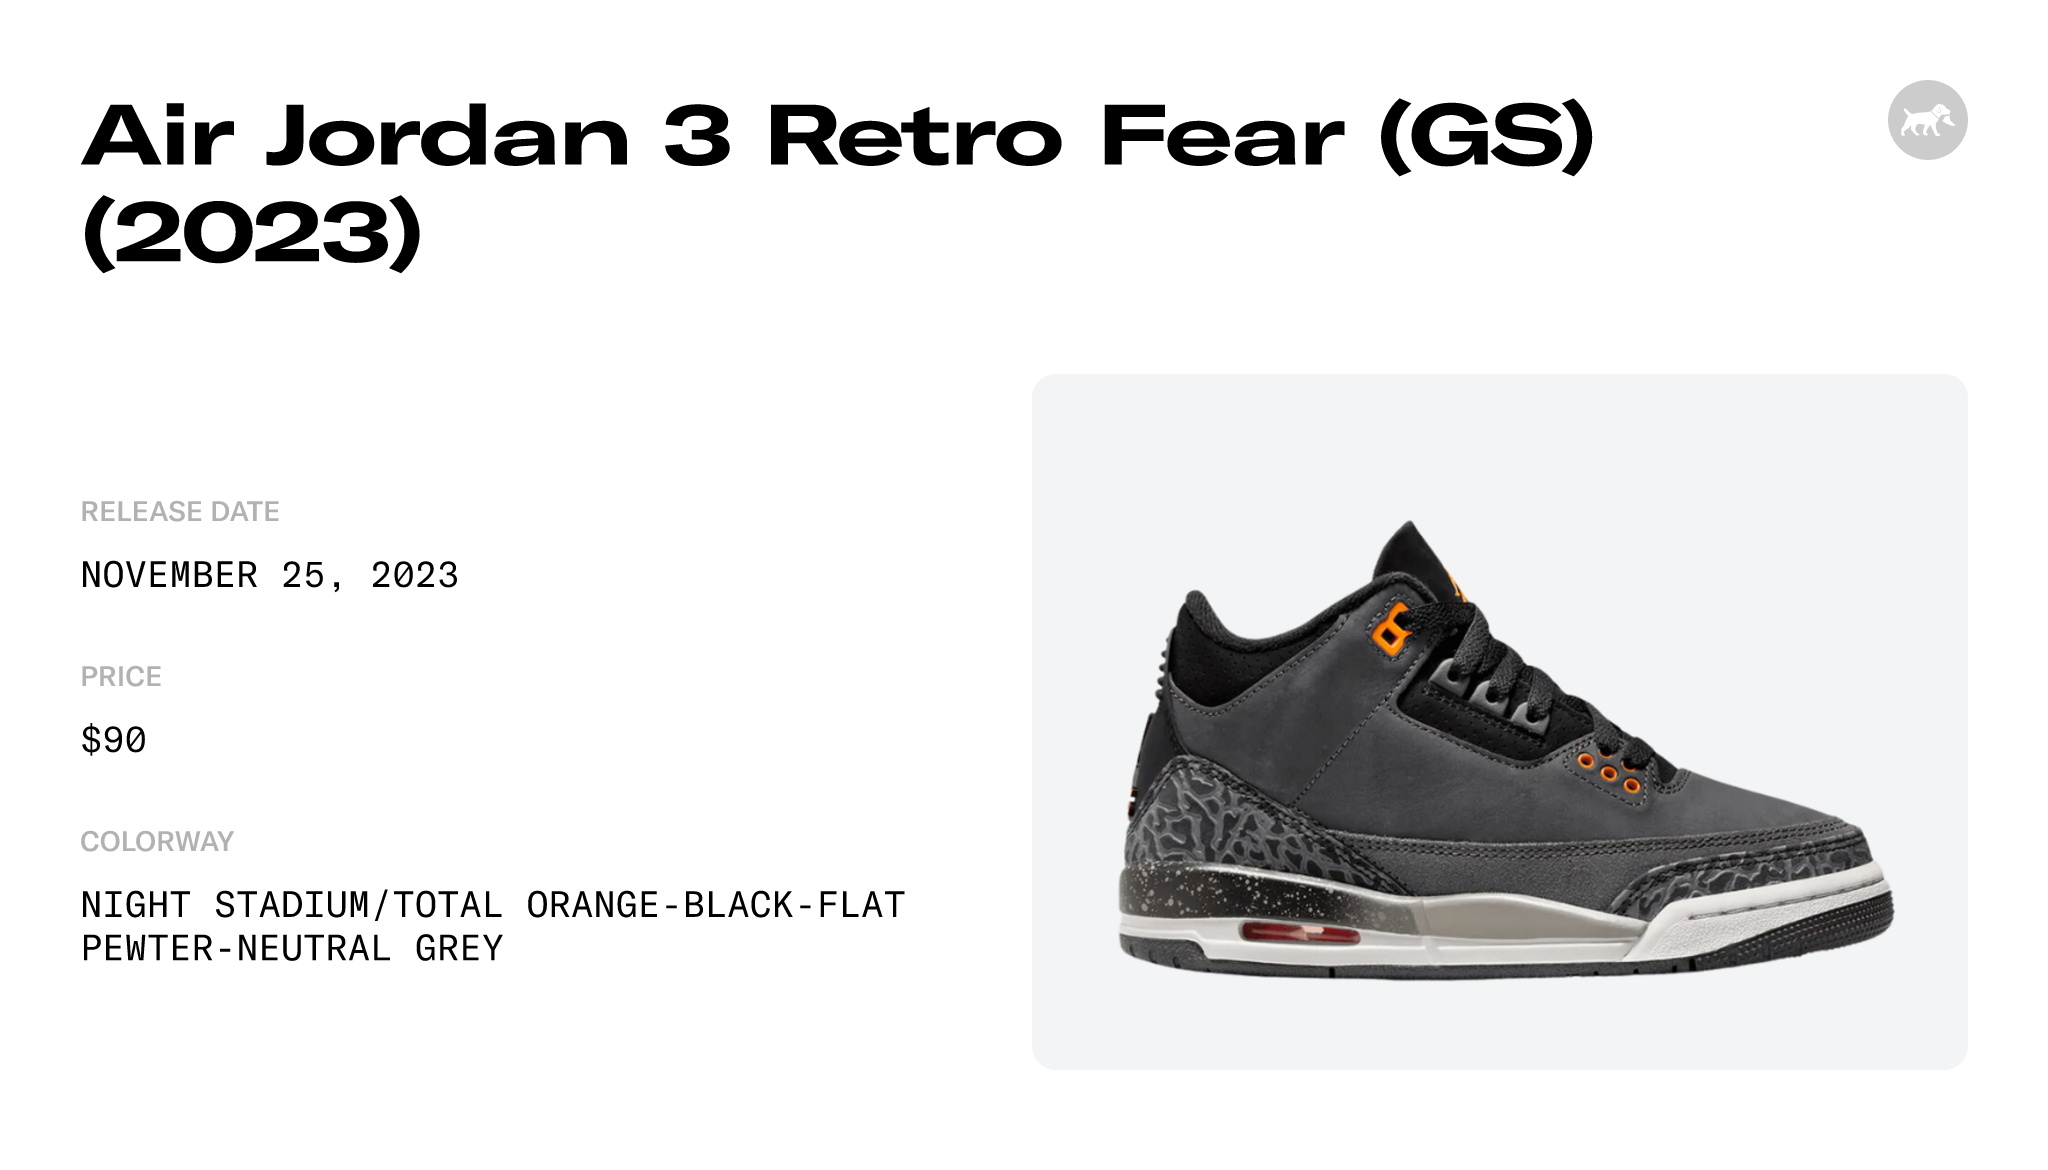 Air Jordan 3 Retro Fear (GS) (2023) - DM0967-080 Raffles and